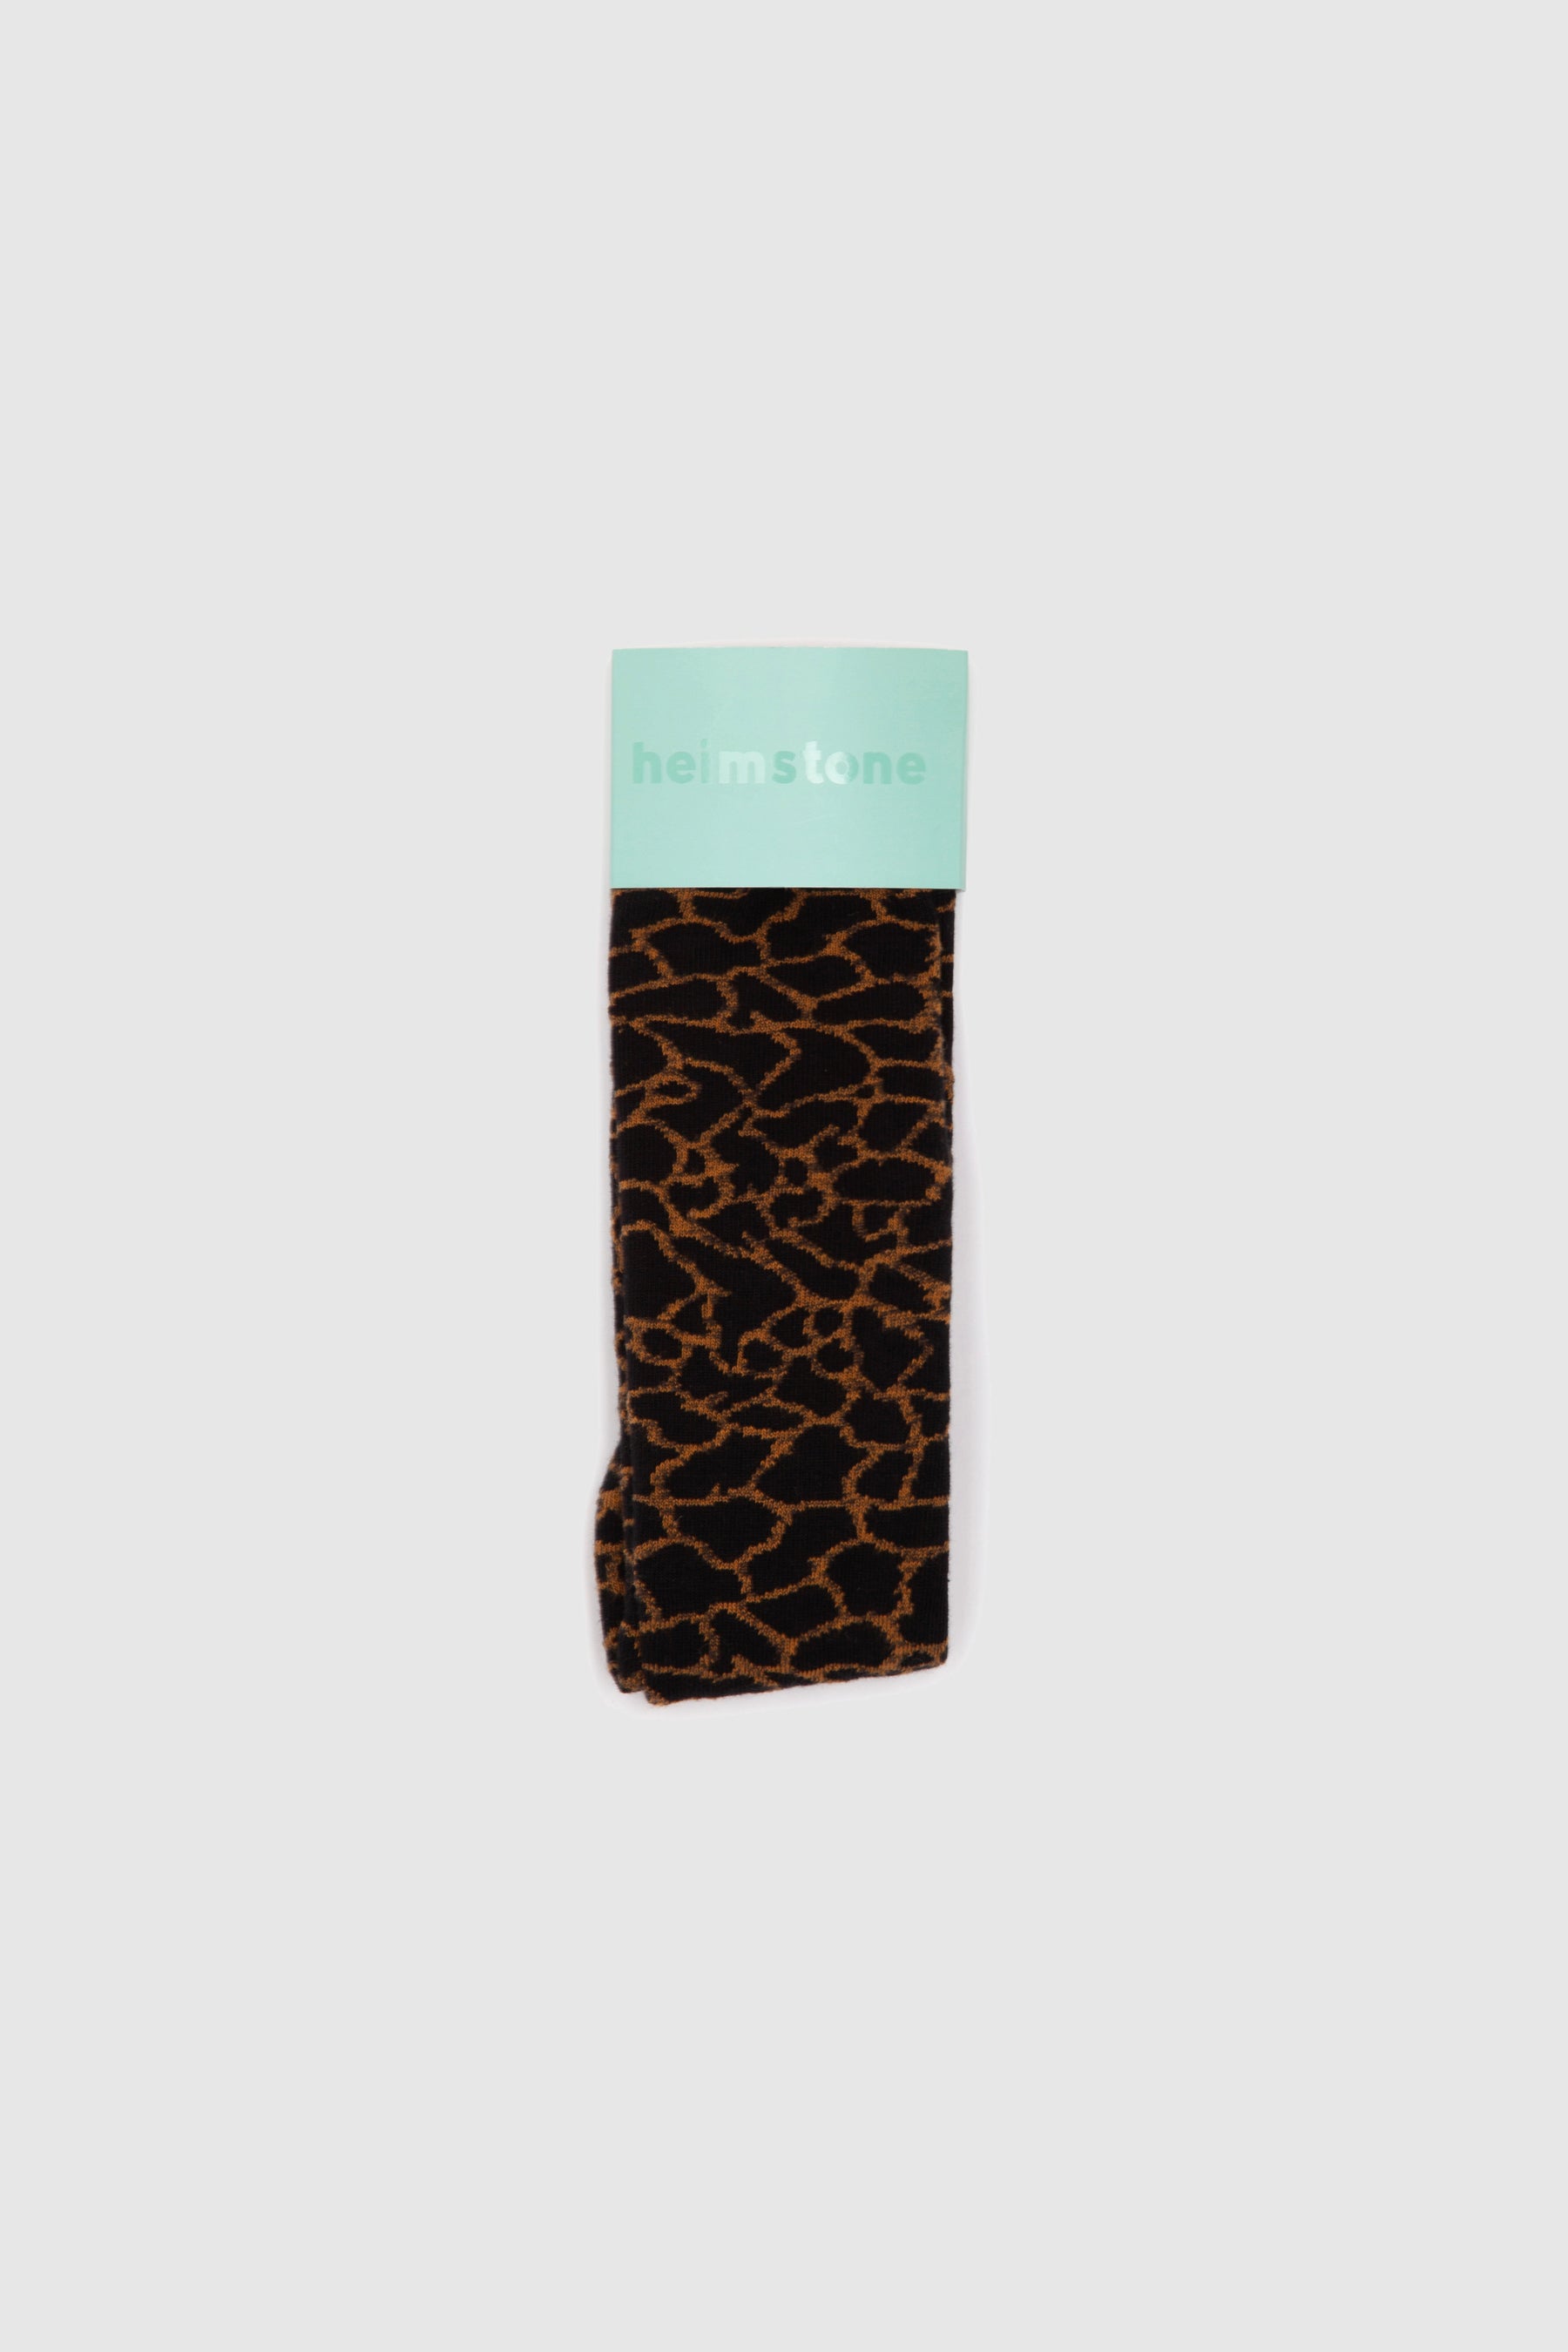 Knee socks in giraffe print